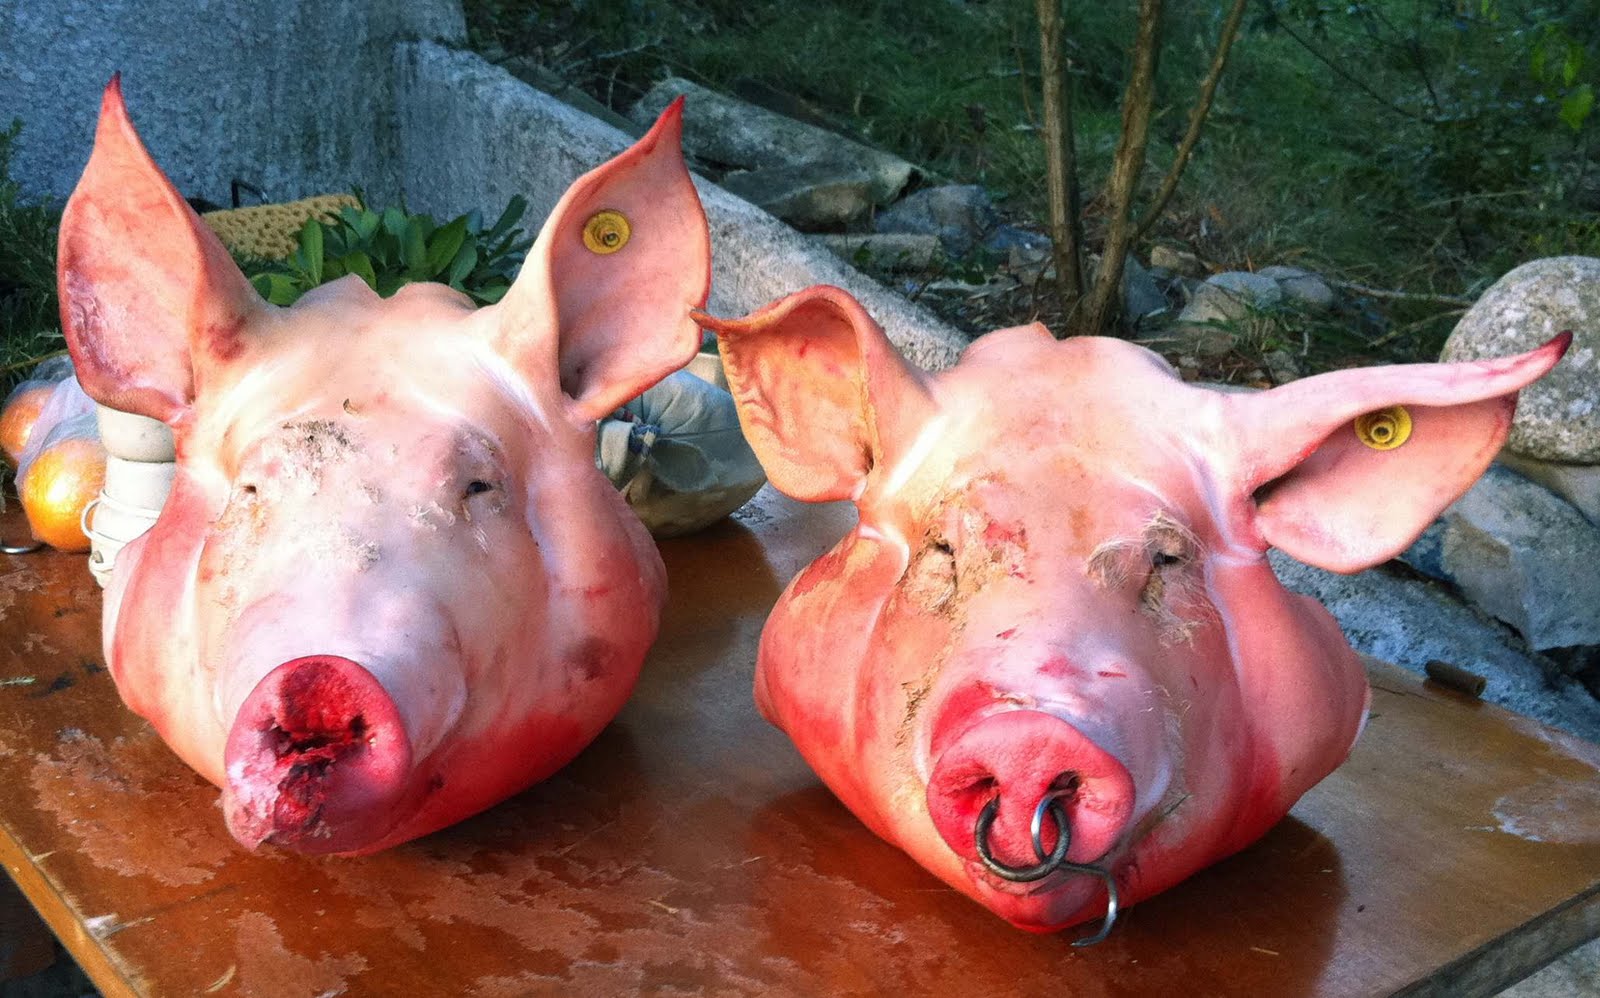 Des têtes de porcs devant la résidence de l’ambassadeur du Maroc à Paris